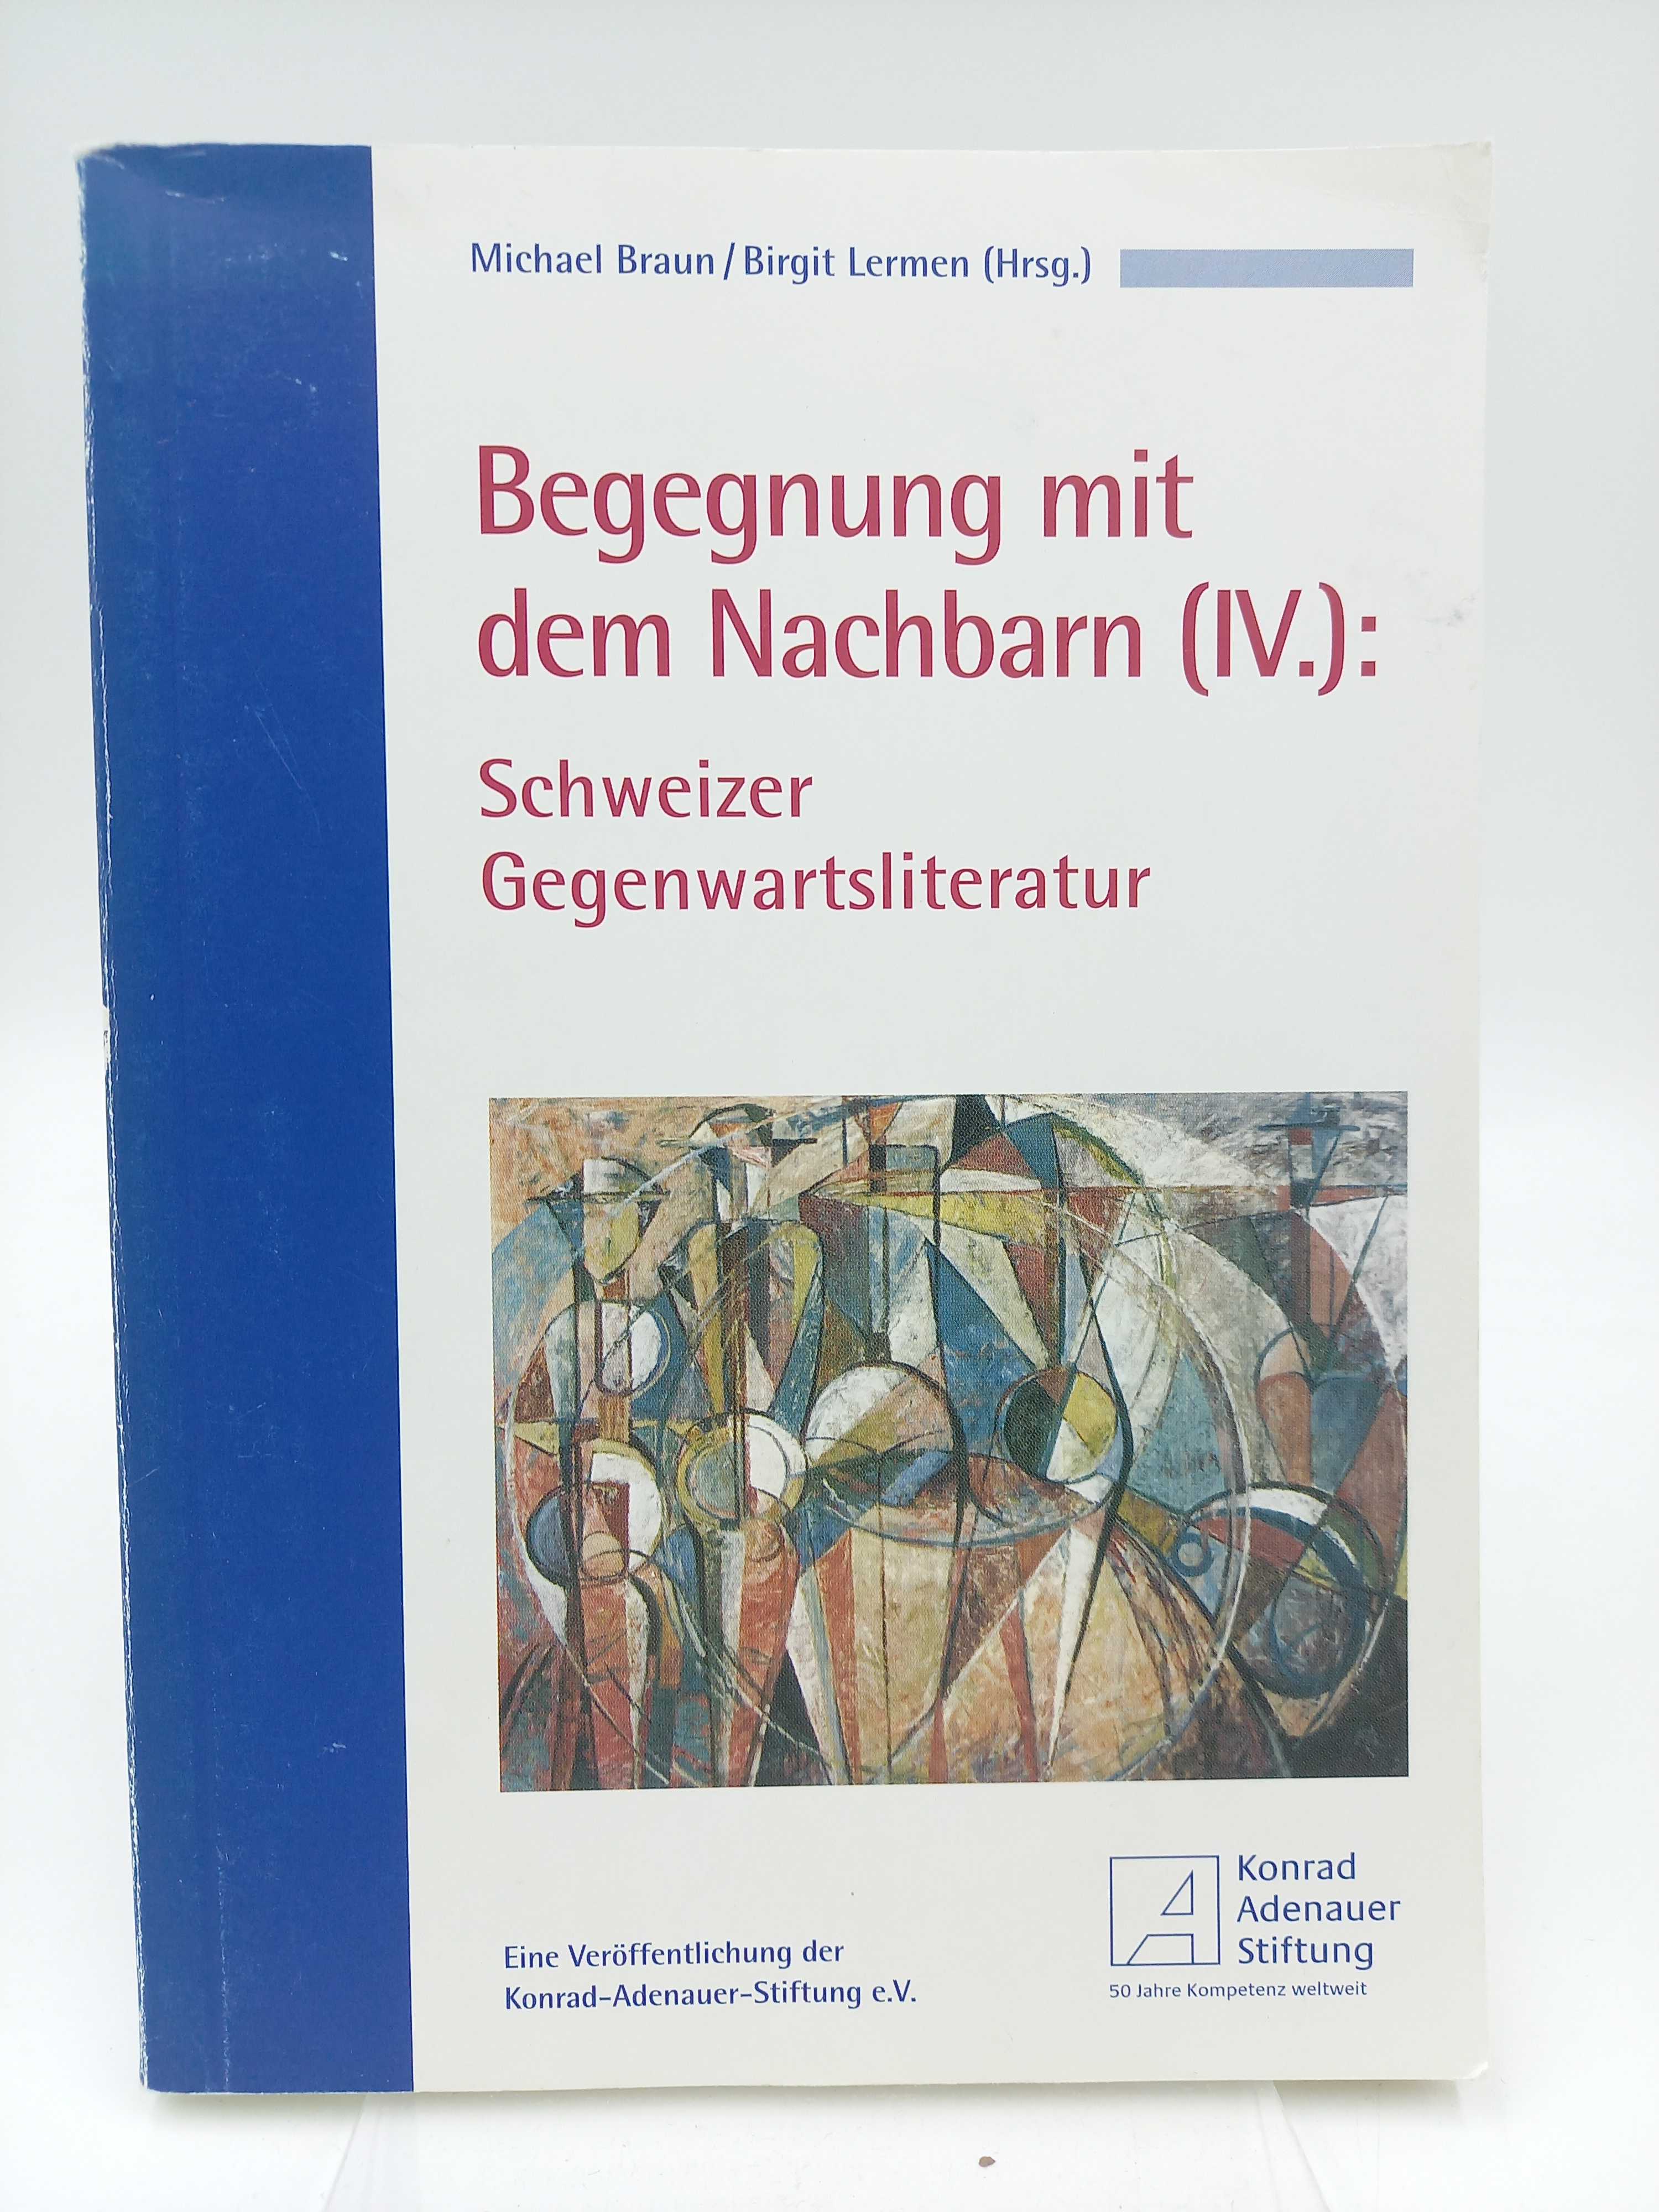 Begegnung mit dem Nachbarn IV: Schweizer Gegenwartsliteratur. - Braun, Michael / Lermen, Birgit [Hrsg.]